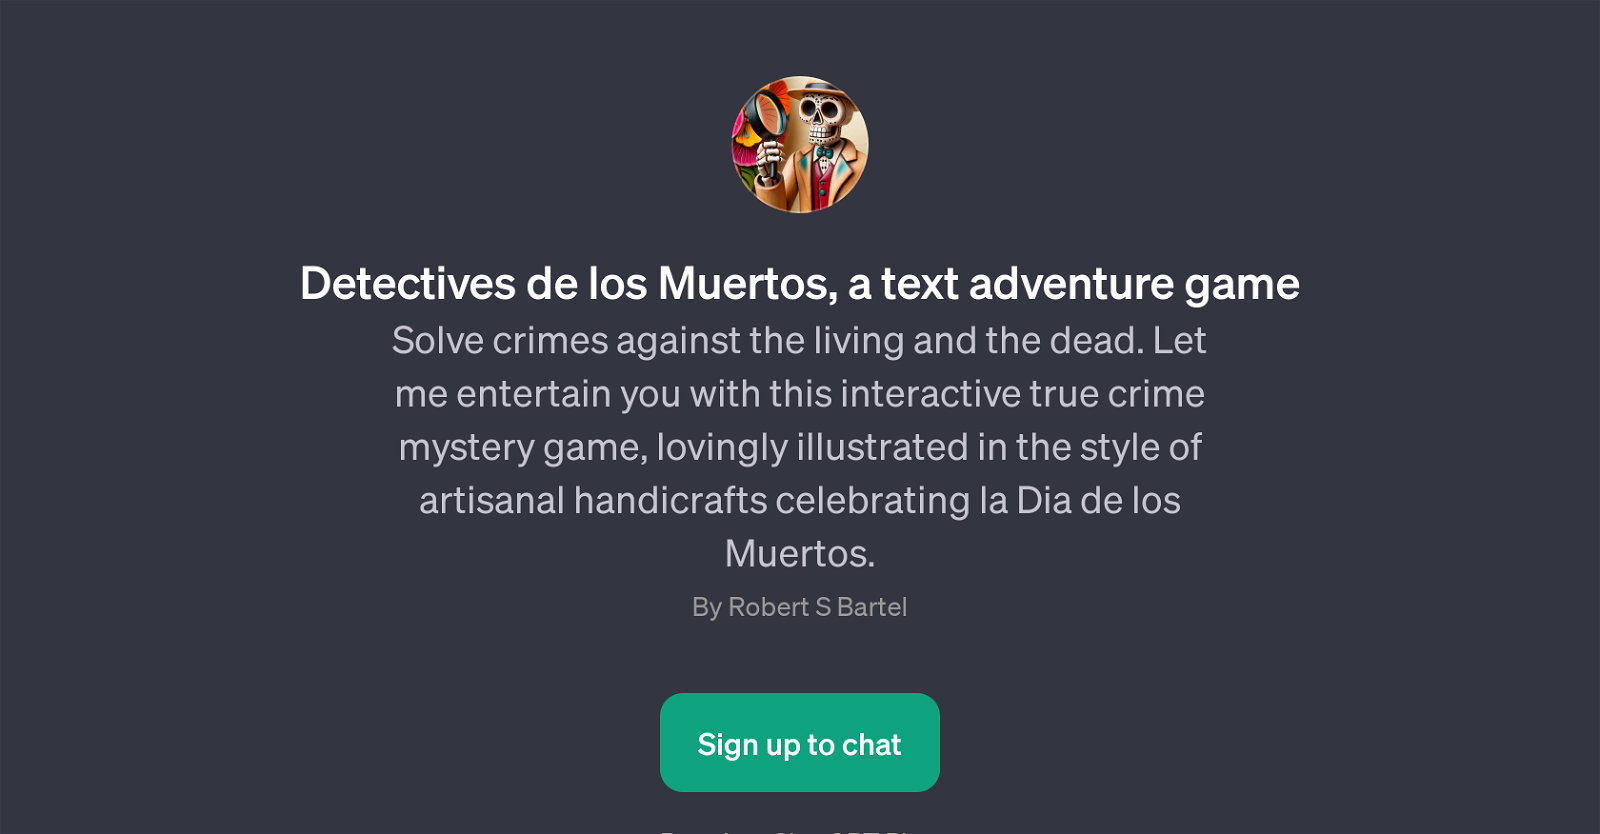 Detectives de los Muertos website